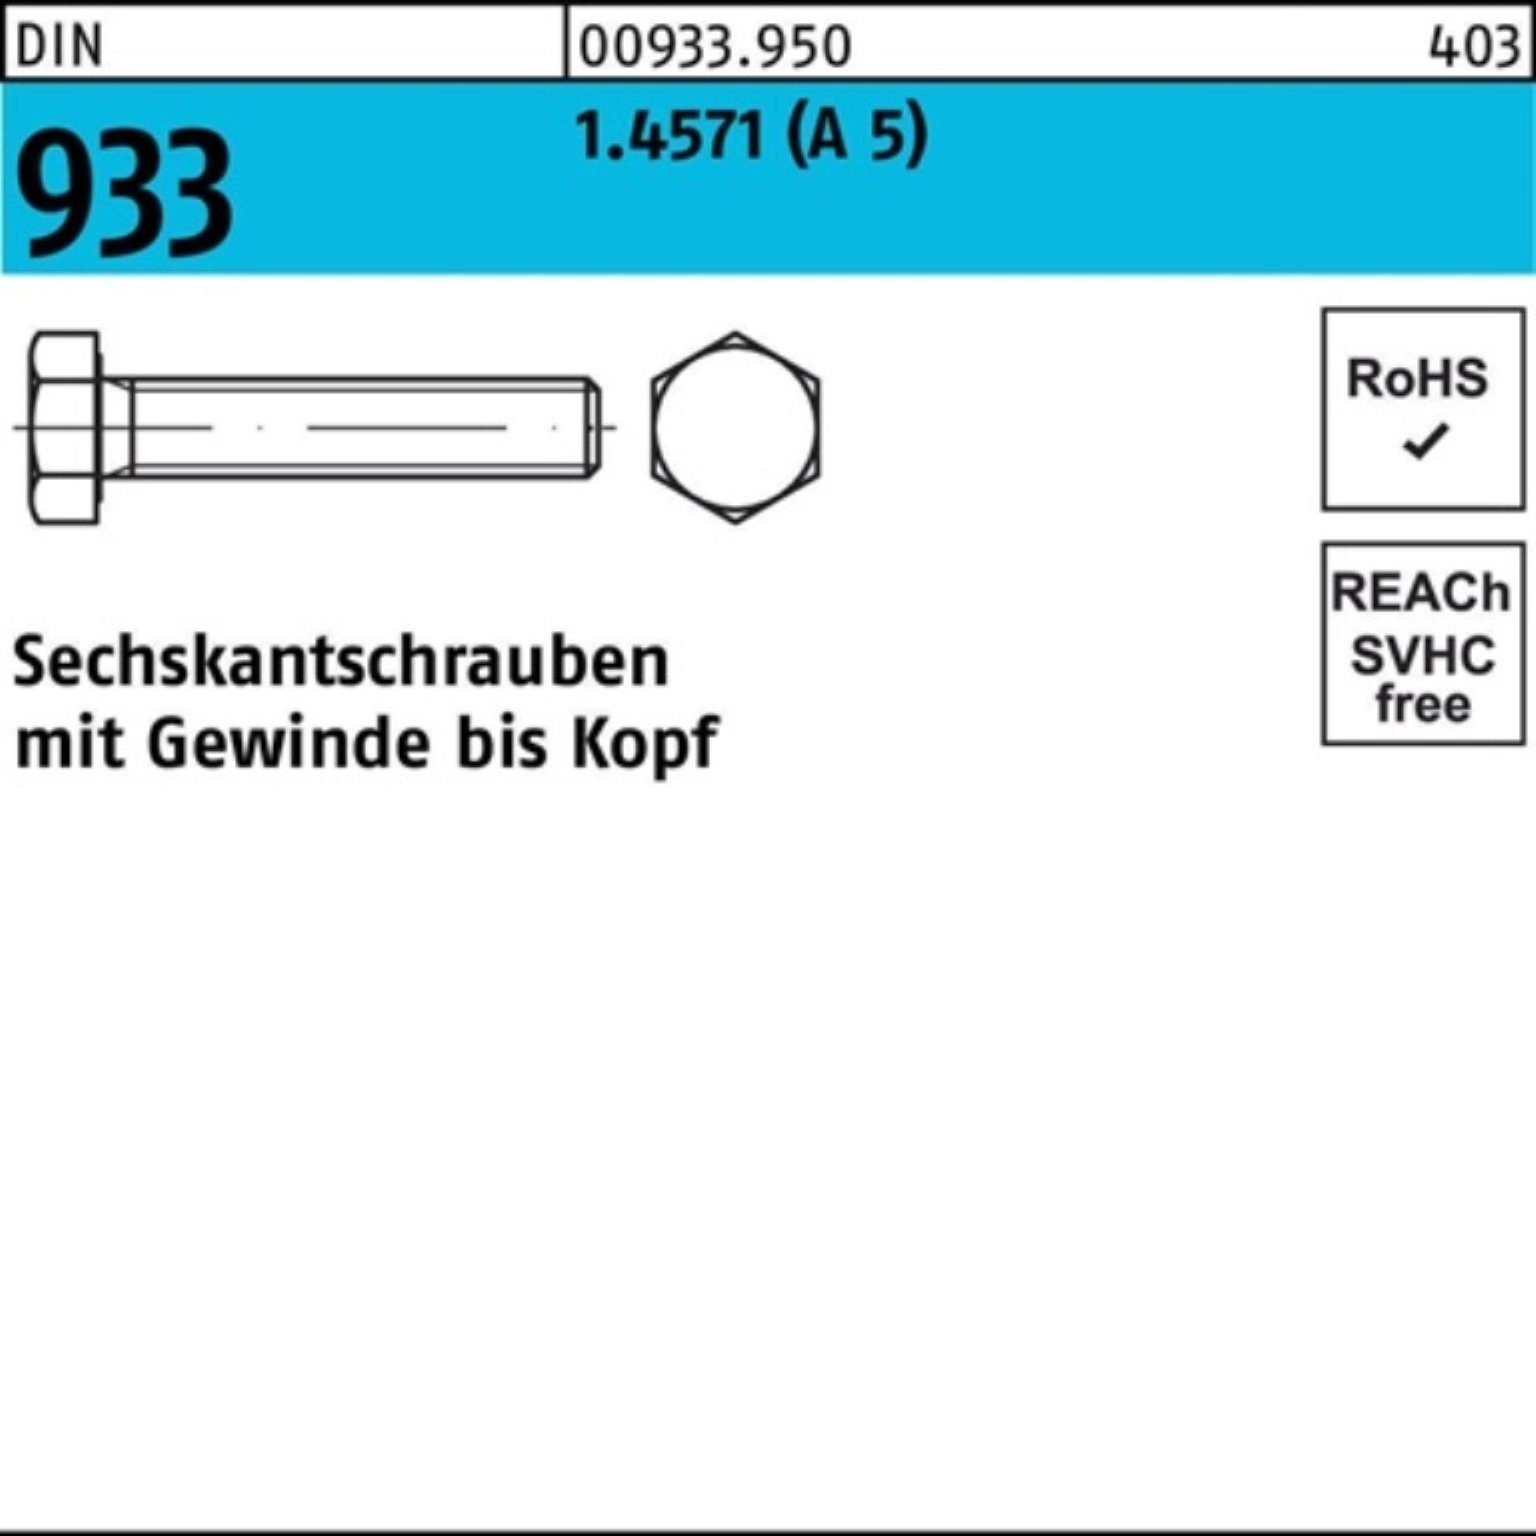 A 5 Pack Sechskantschraube VG 933 DIN 100er 1 55 Reyher DIN Sechskantschraube Stück 933 M16x 1